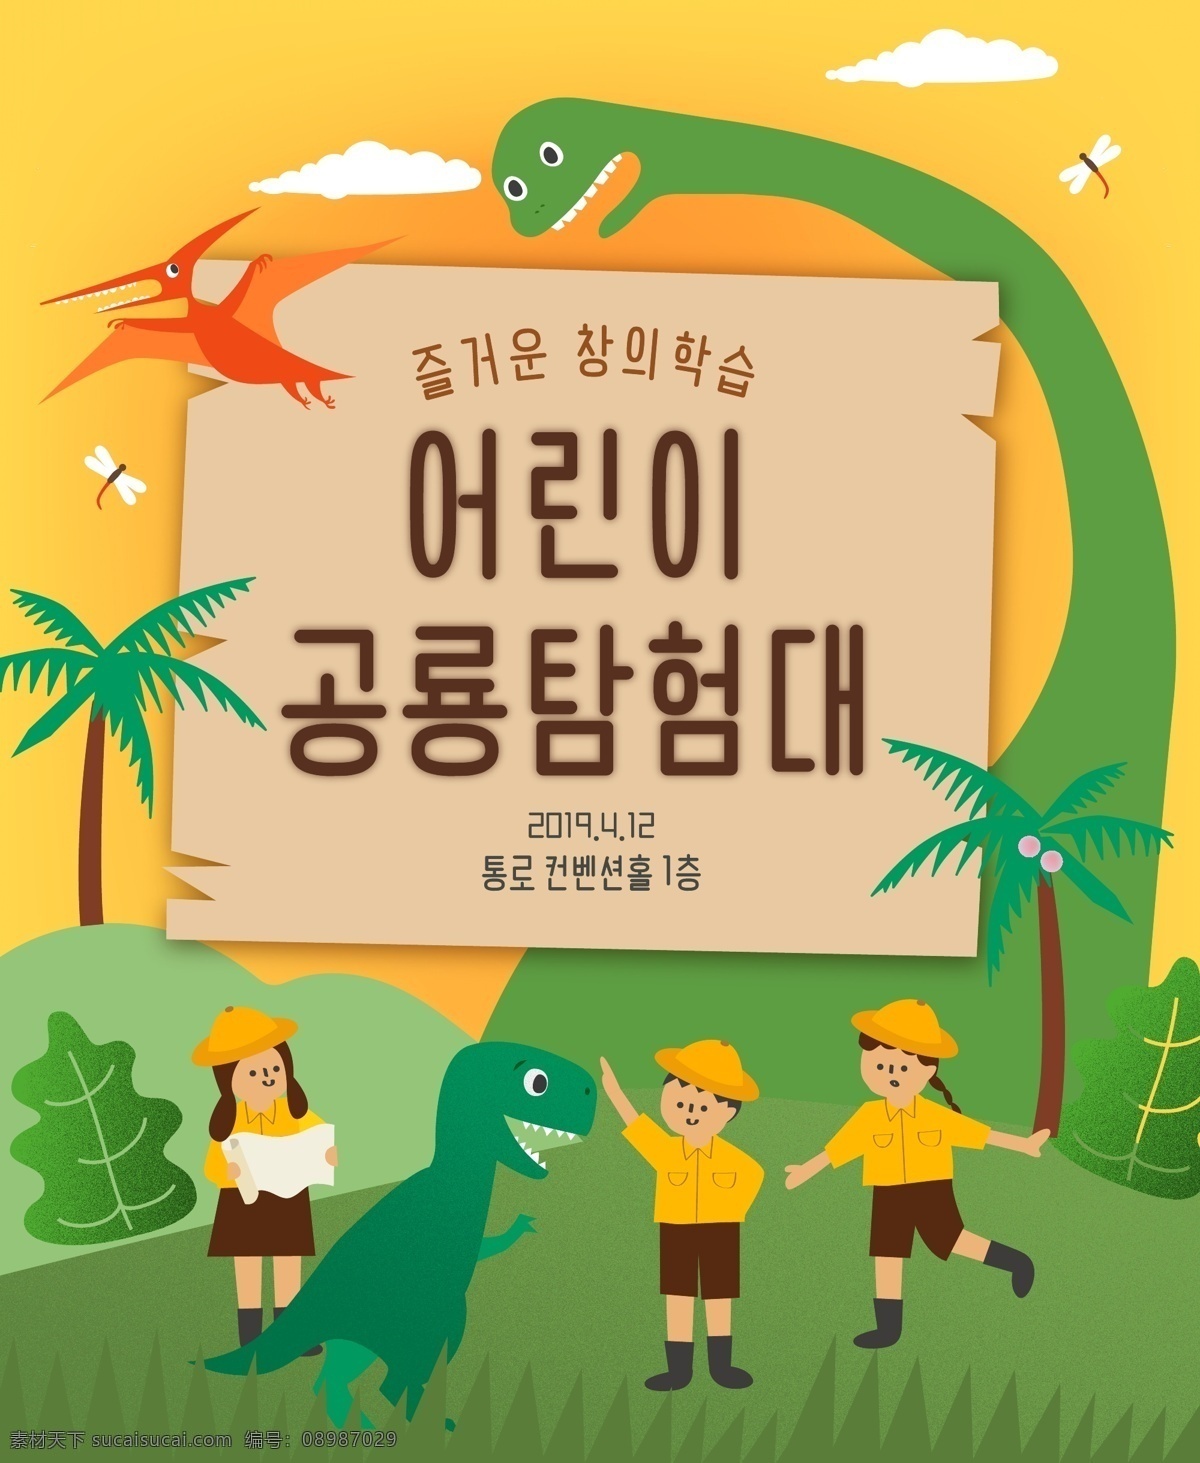 韩国 儿童教育 插画 卡通 海报 韩国韩系 野外 游玩 小学生 学生 恐龙 世界 动物园 儿童 培训 教育 学习 招贴画